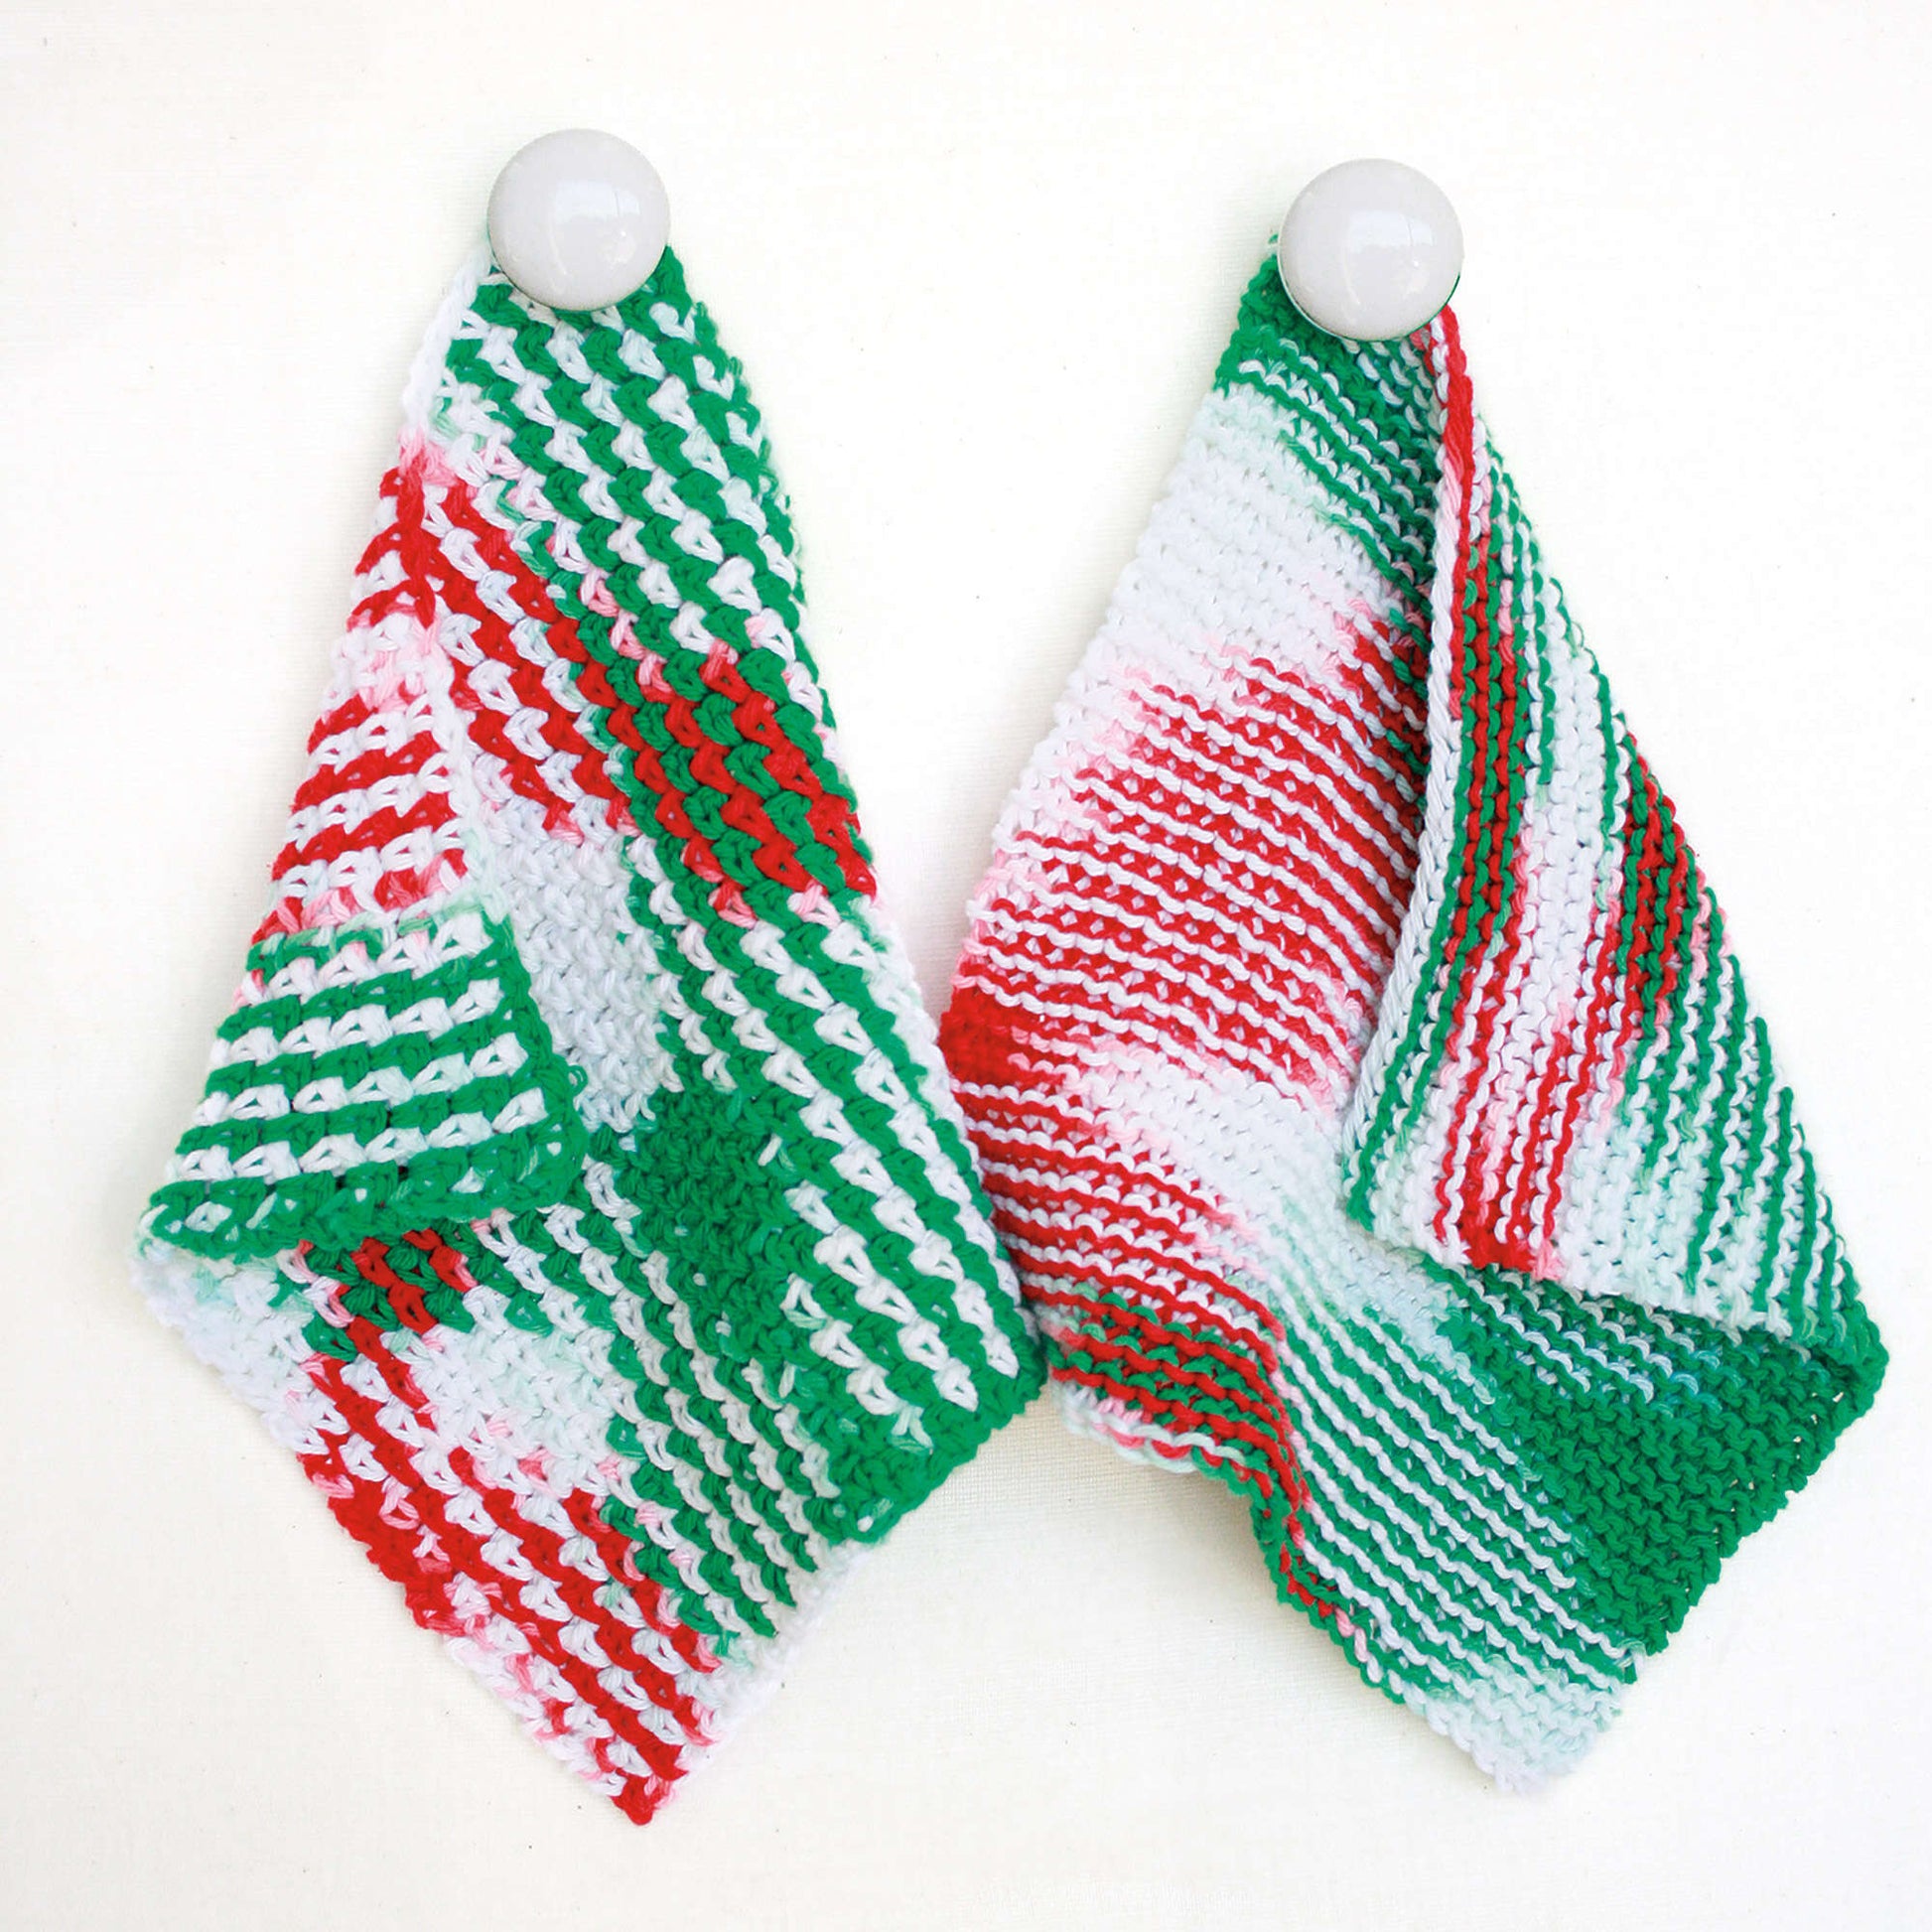 Bernat Holiday Crochet Dishcloth Crochet